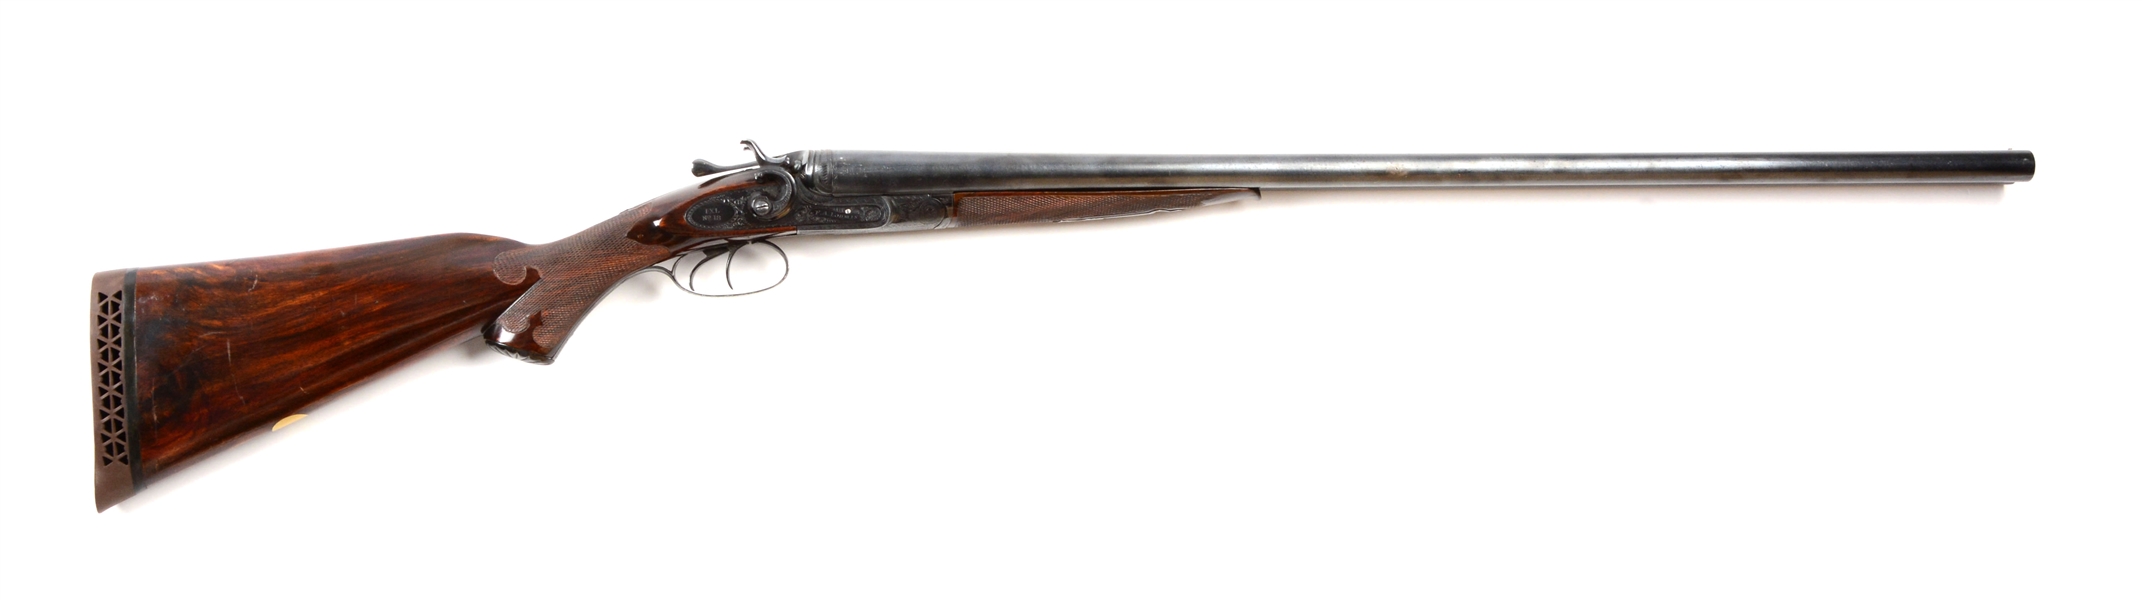 (A^) ENGLISH F.A. LOOMIS IXL NO. 18 DOUBLE BARREL 12 BORE HAMMER SHOTGUN.